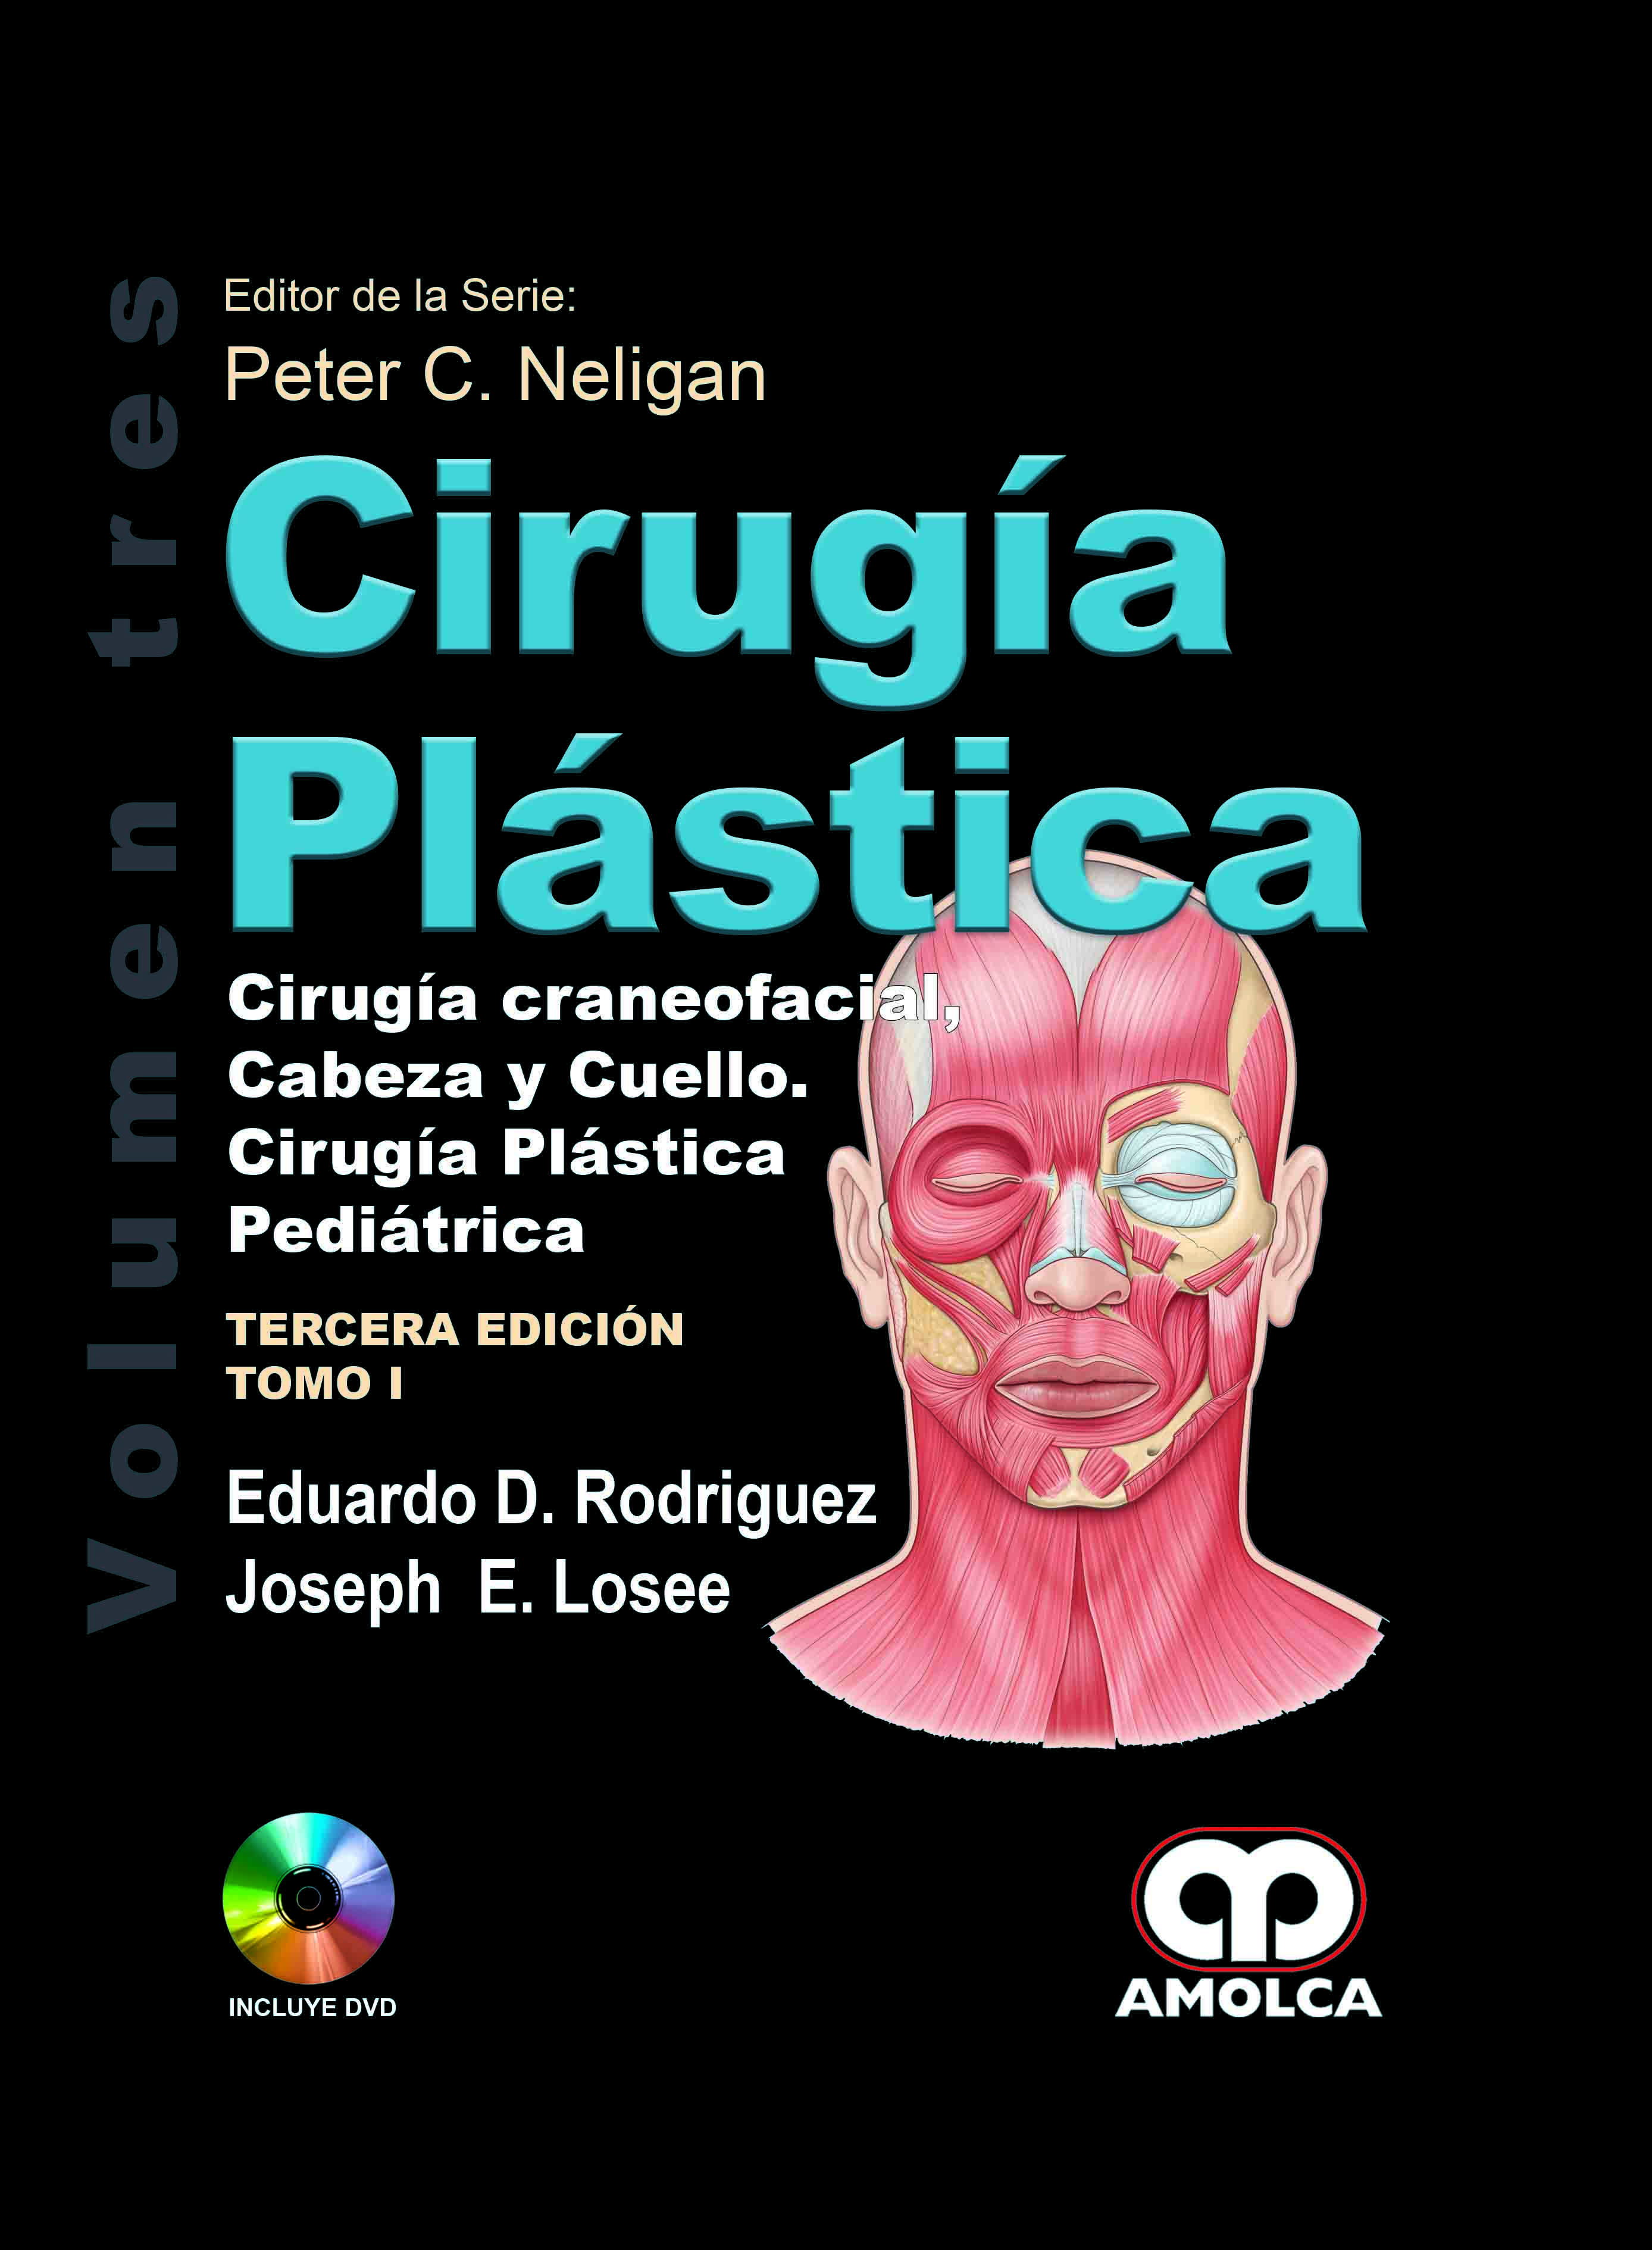 CIRUGÍA PLÁSTICA - CRANEOFACIAL, CABEZA Y CUELLO. CIRUGÍA PLÁSTICA PEDIÁTRICA. Volumen 3. 2 Tomos